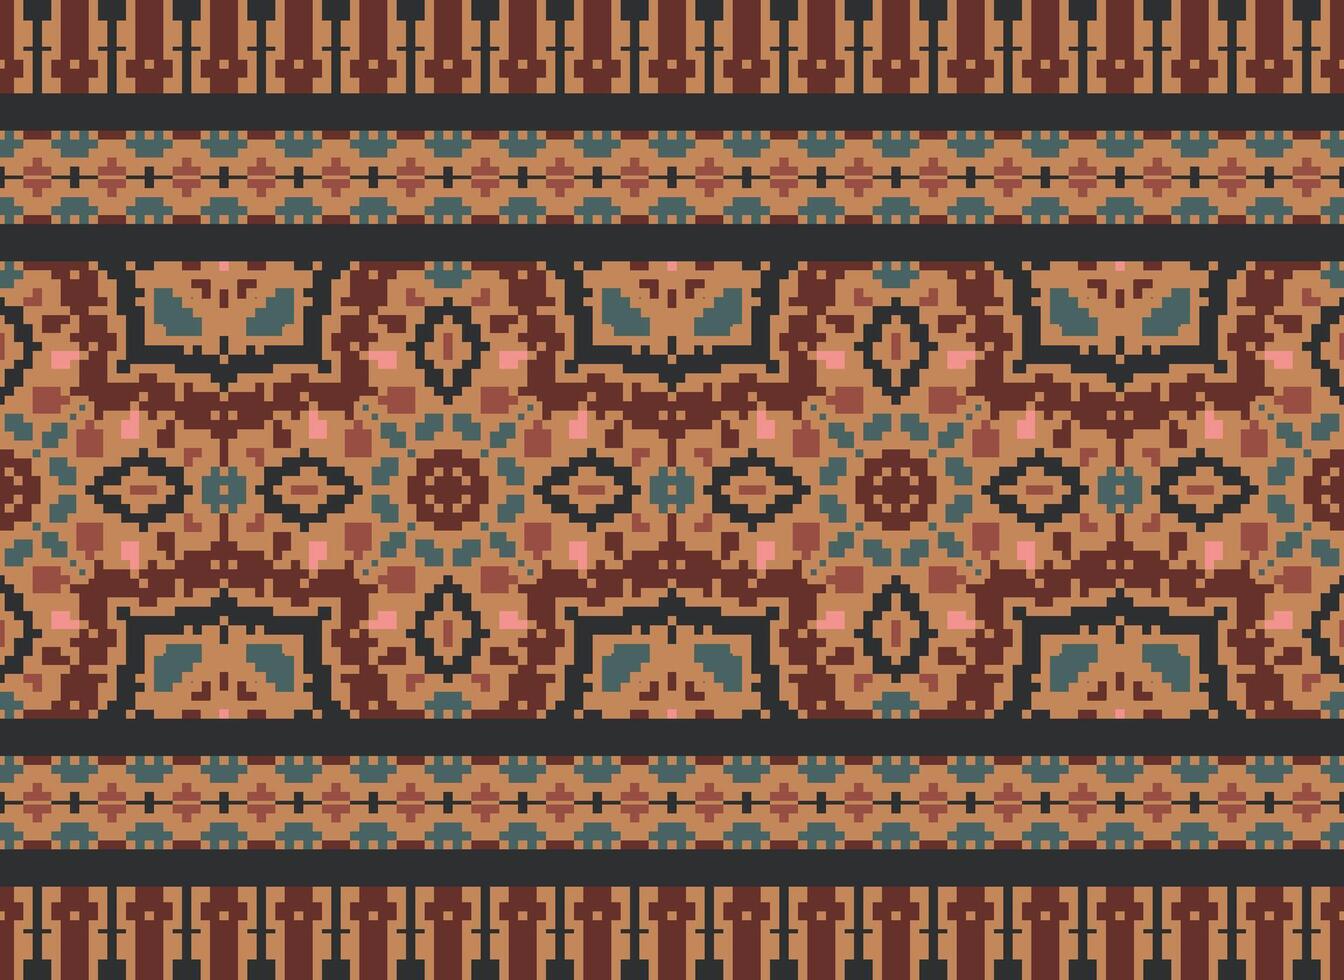 Afrikaanse ikat pixel bloemen paisley borduurwerk achtergrond. meetkundig etnisch oosters patroon traditioneel.azteken stijl abstract vector illustratie.ontwerp voor textuur, stof, kleding, verpakking, tapijt.